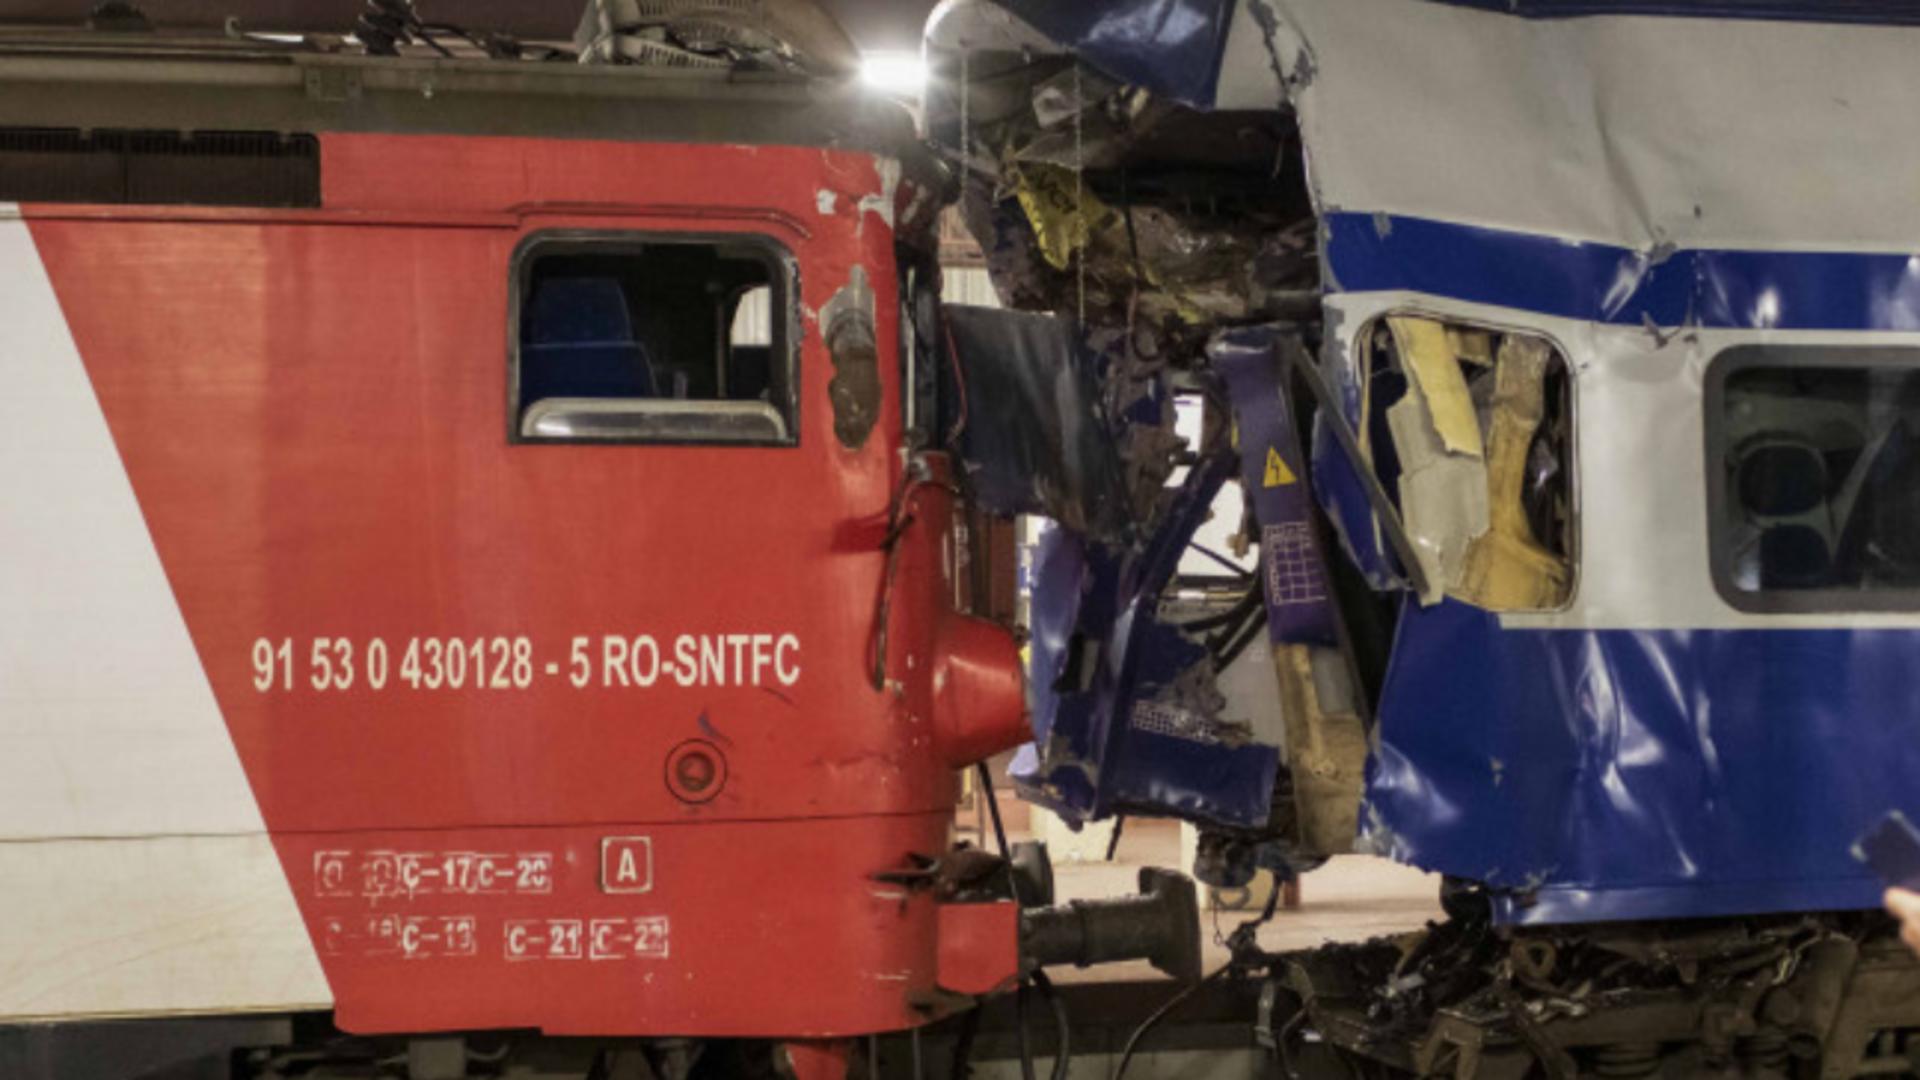 Tragedia din Gara Galați: Detalii incredibile - De ce locomotiva a intrat cu viteză în vagon Foto: INQUAM / Ovidiu Iordachi 